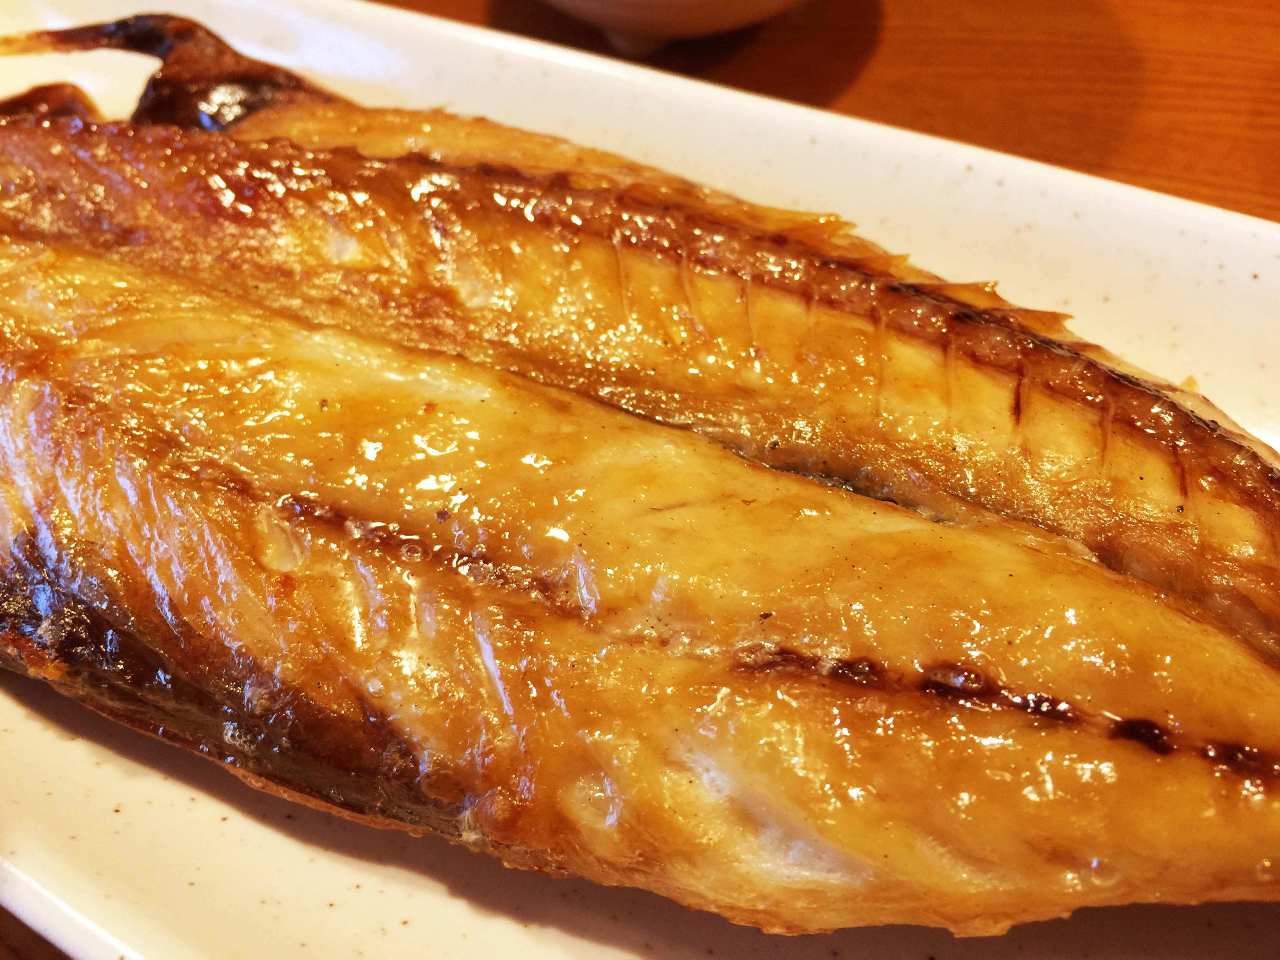 干物と日本酒の店 yoshi‐魚‐tei